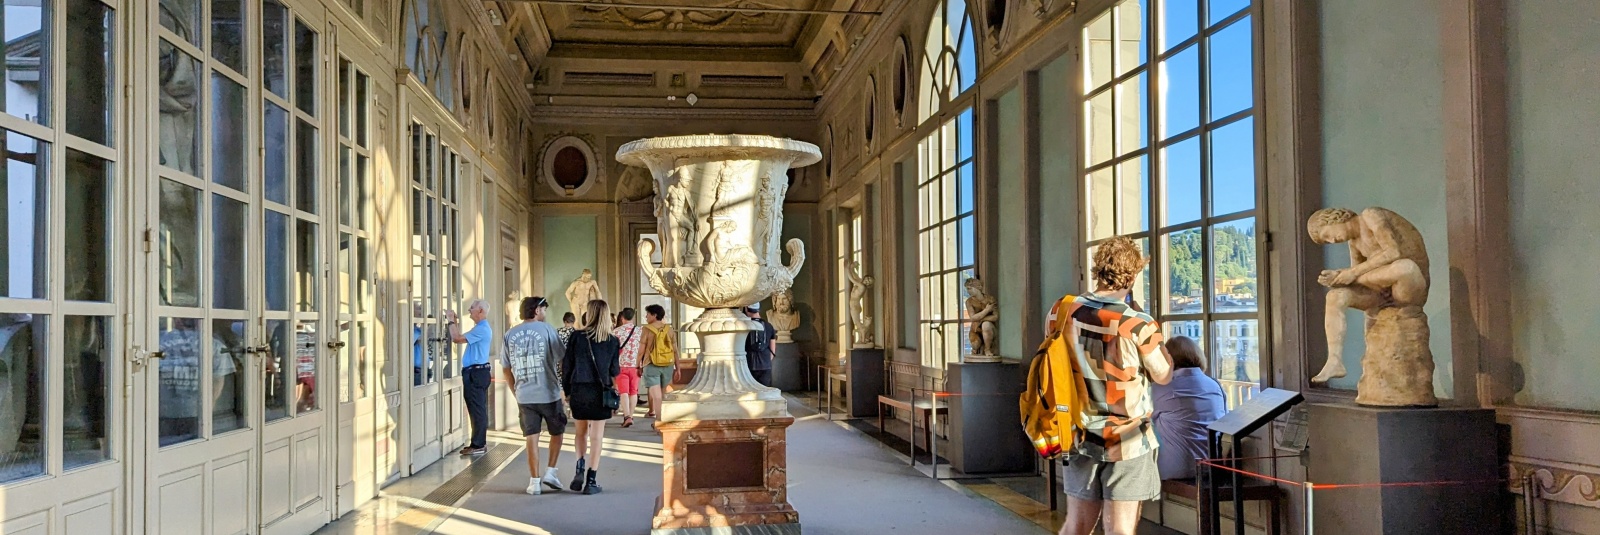 Vizită la Galeria Uffizi din Florența